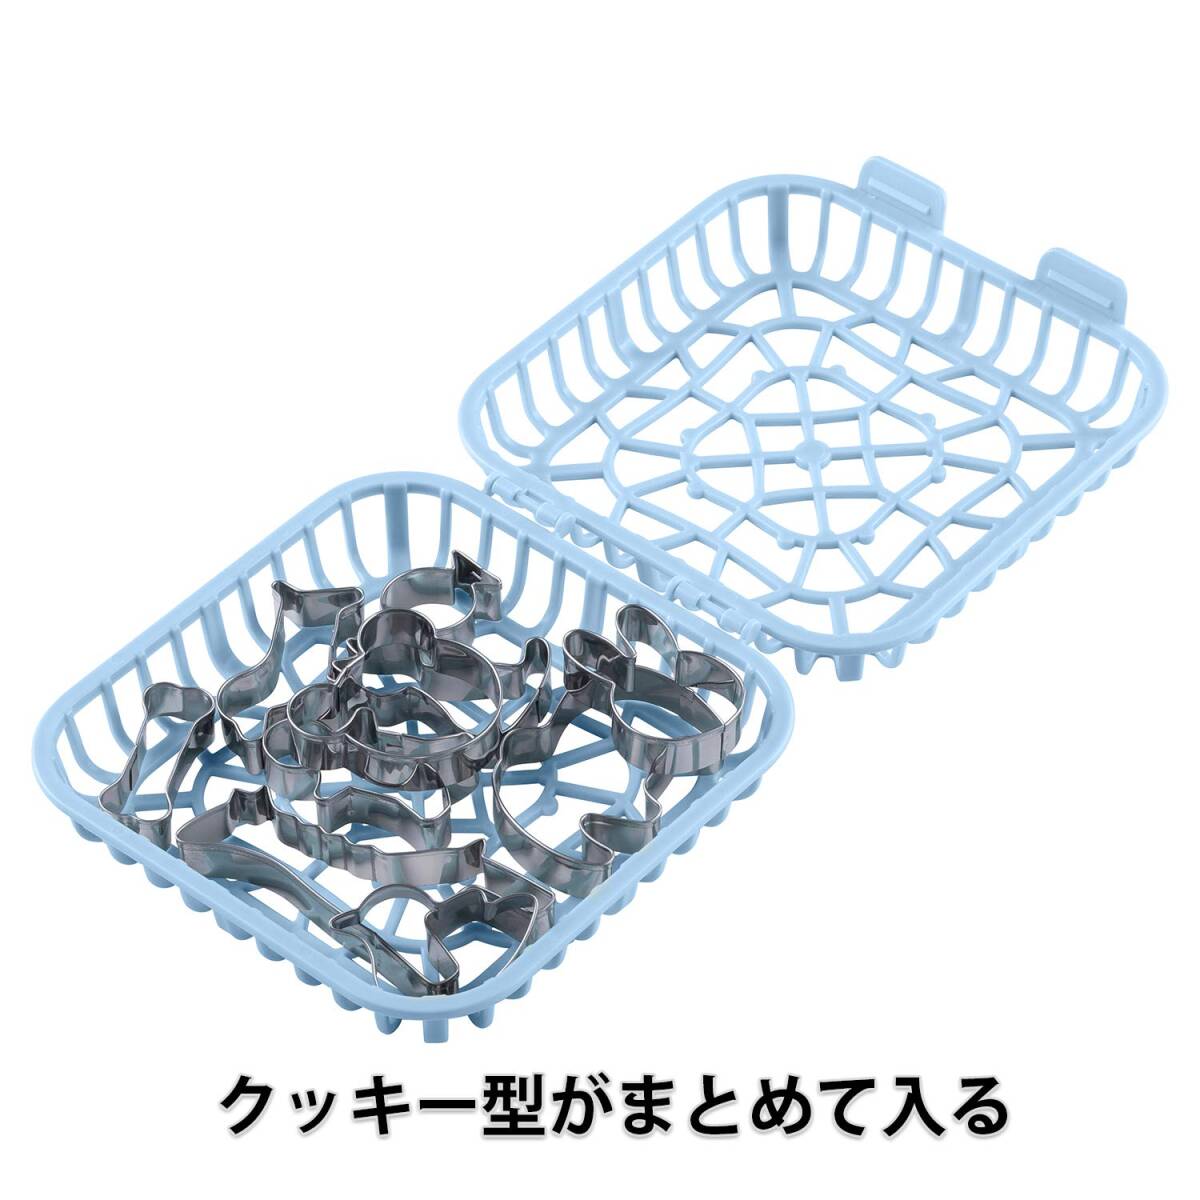 貝印 KAI クッキー 抜き型 食洗機ケースセット どうぶつ リトルシェフクラブ 日本製 DL7213_画像2